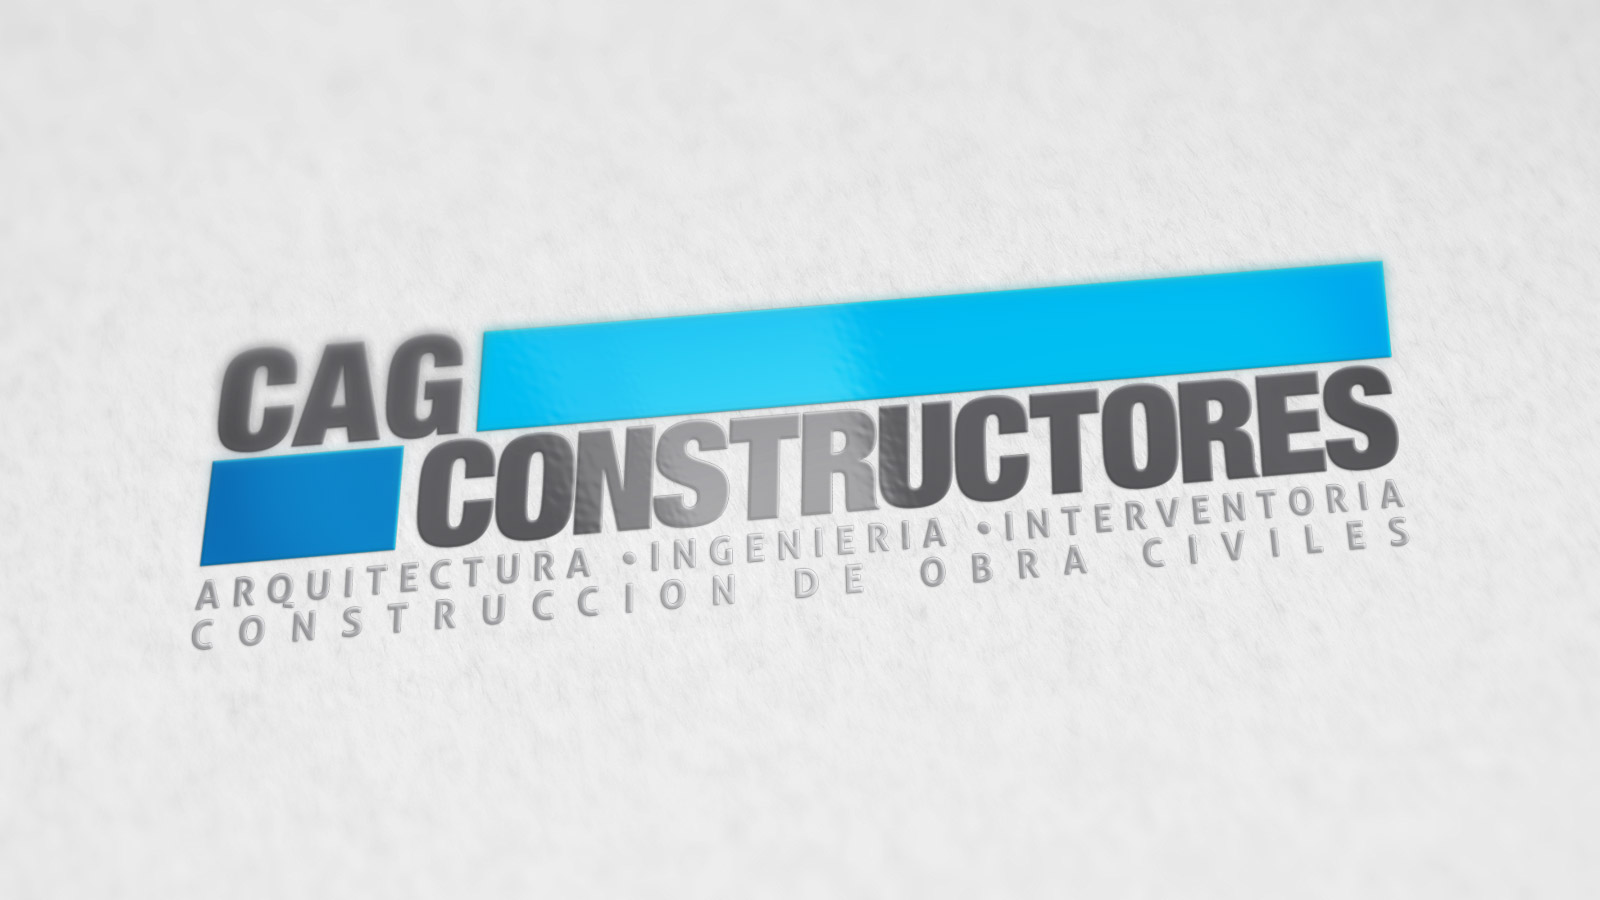 CAG Constructores logo design